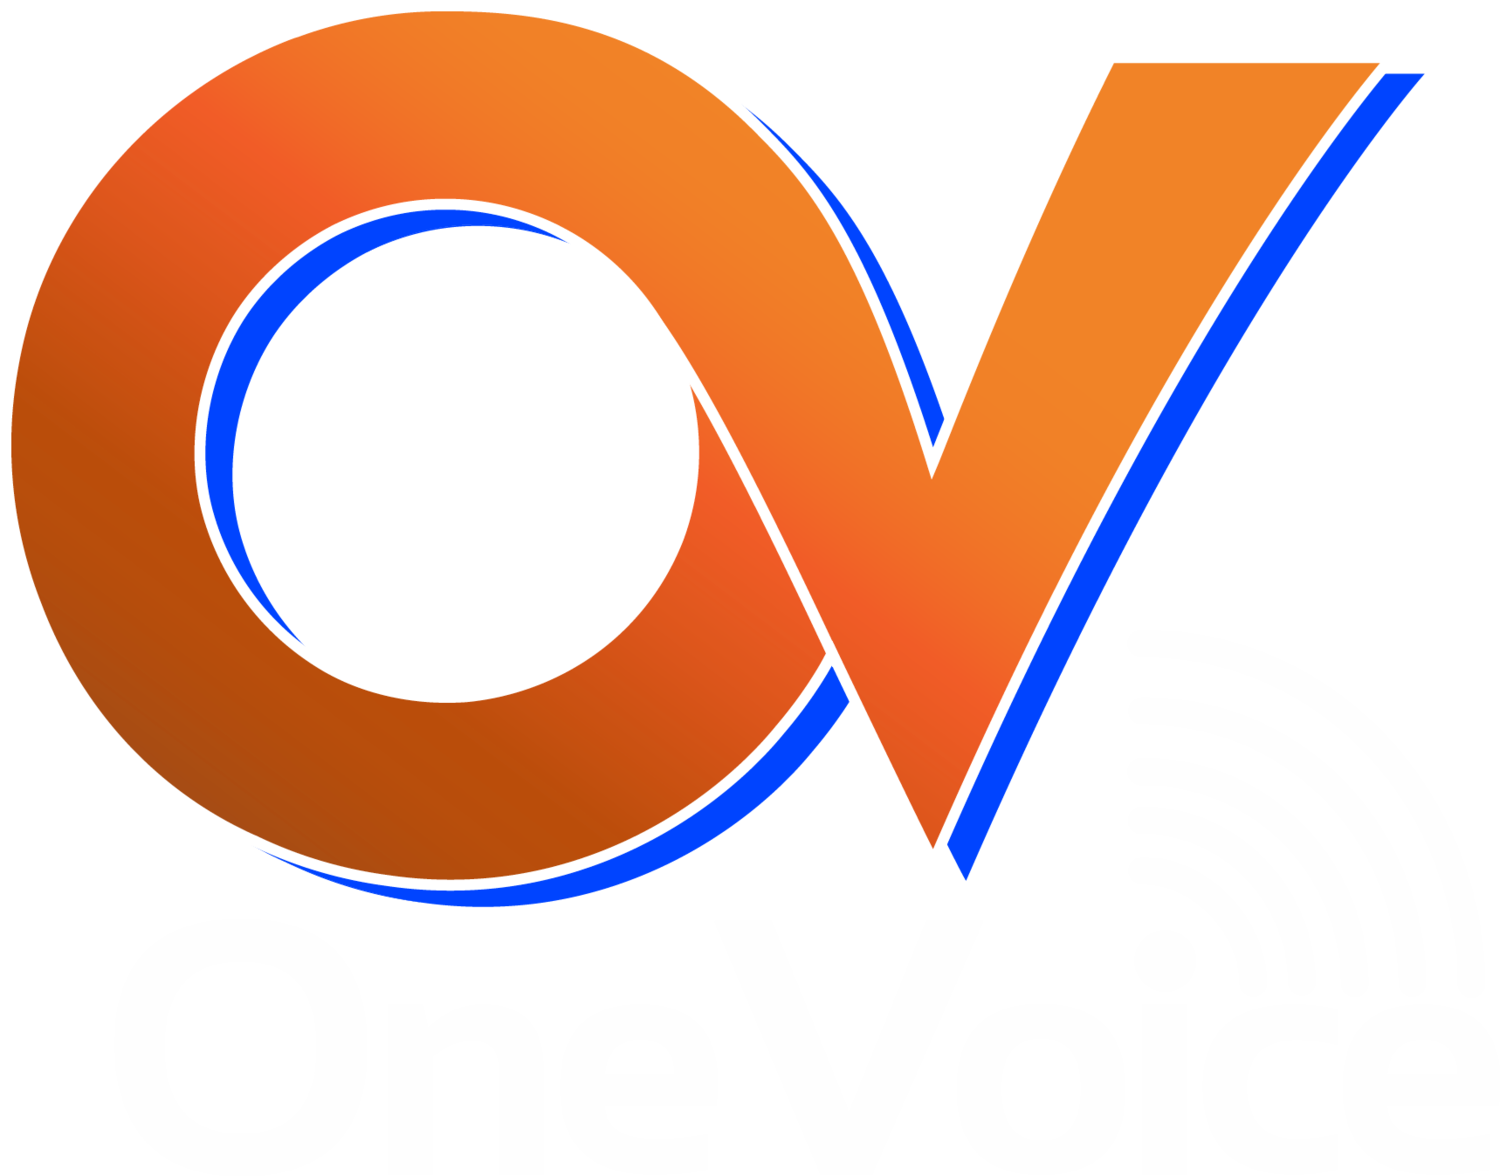 OneVoice